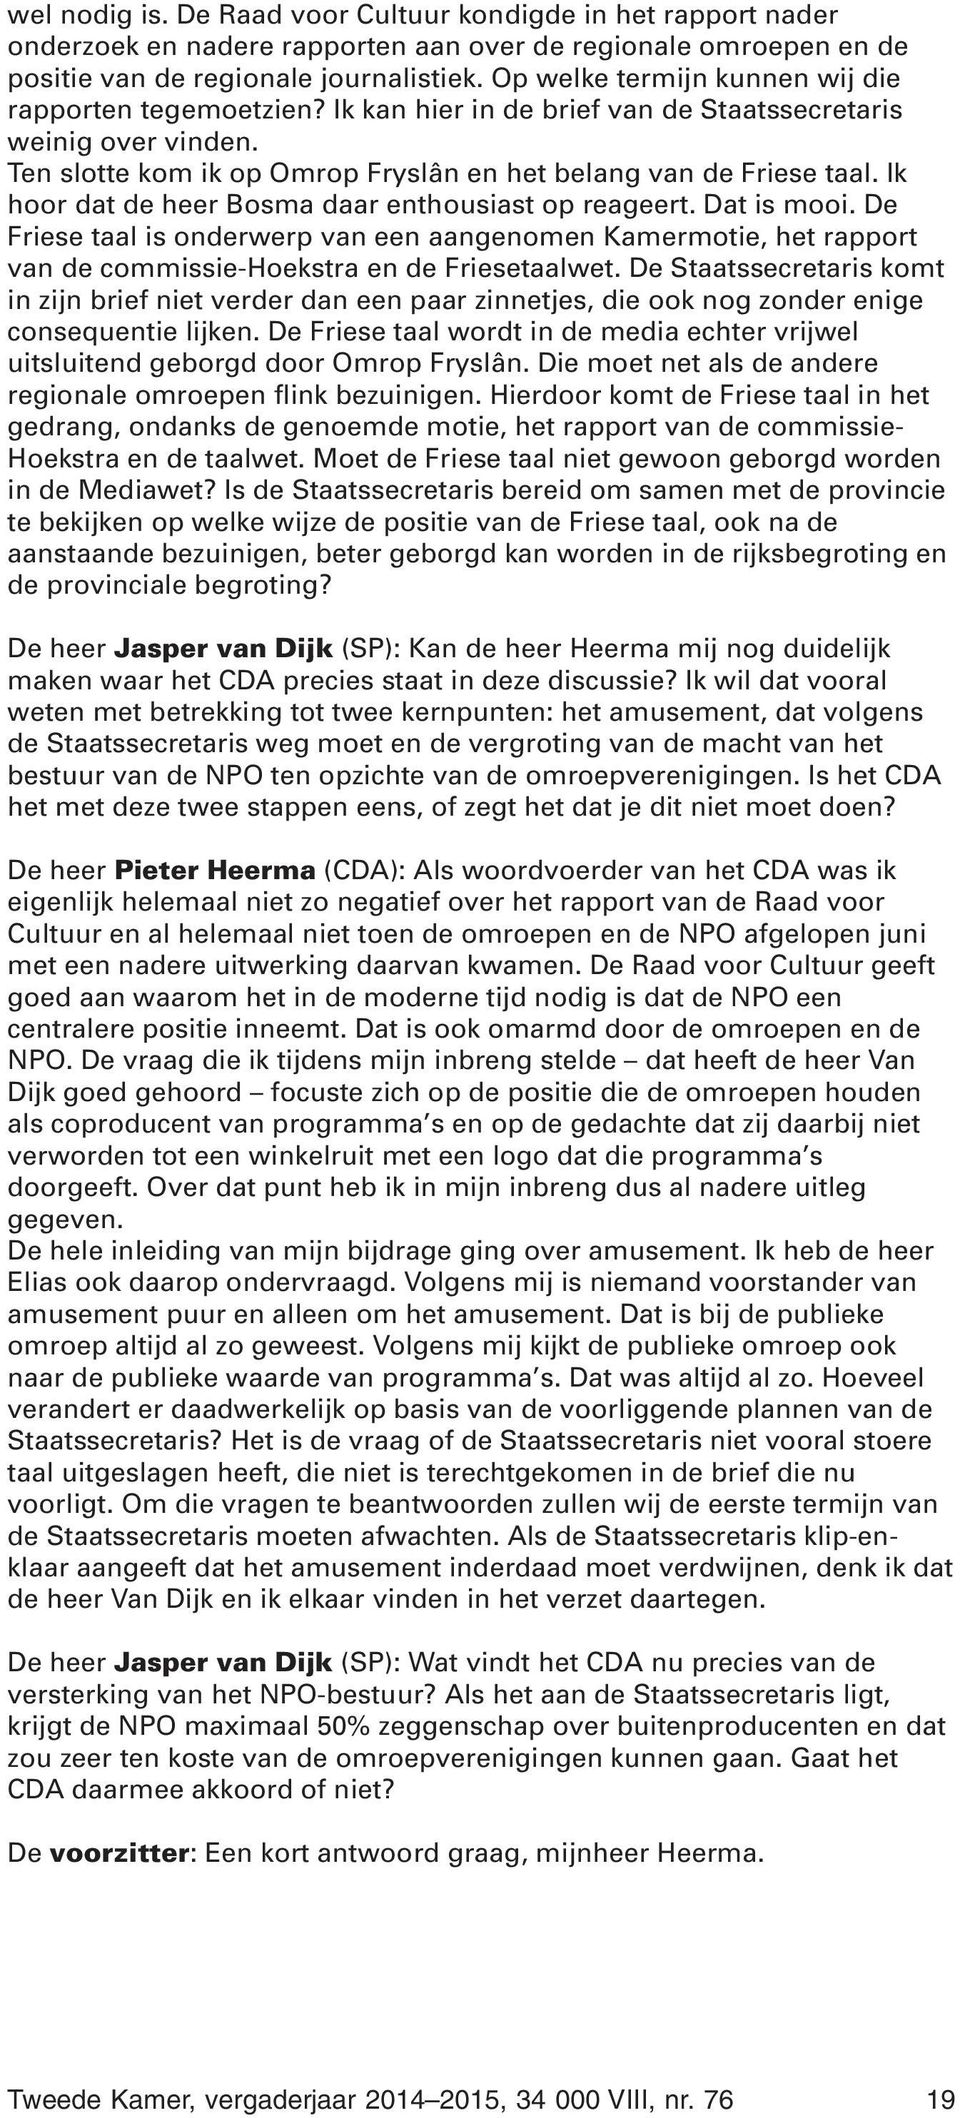 Ik hoor dat de heer Bosma daar enthousiast op reageert. Dat is mooi. De Friese taal is onderwerp van een aangenomen Kamermotie, het rapport van de commissie-hoekstra en de Friesetaalwet.